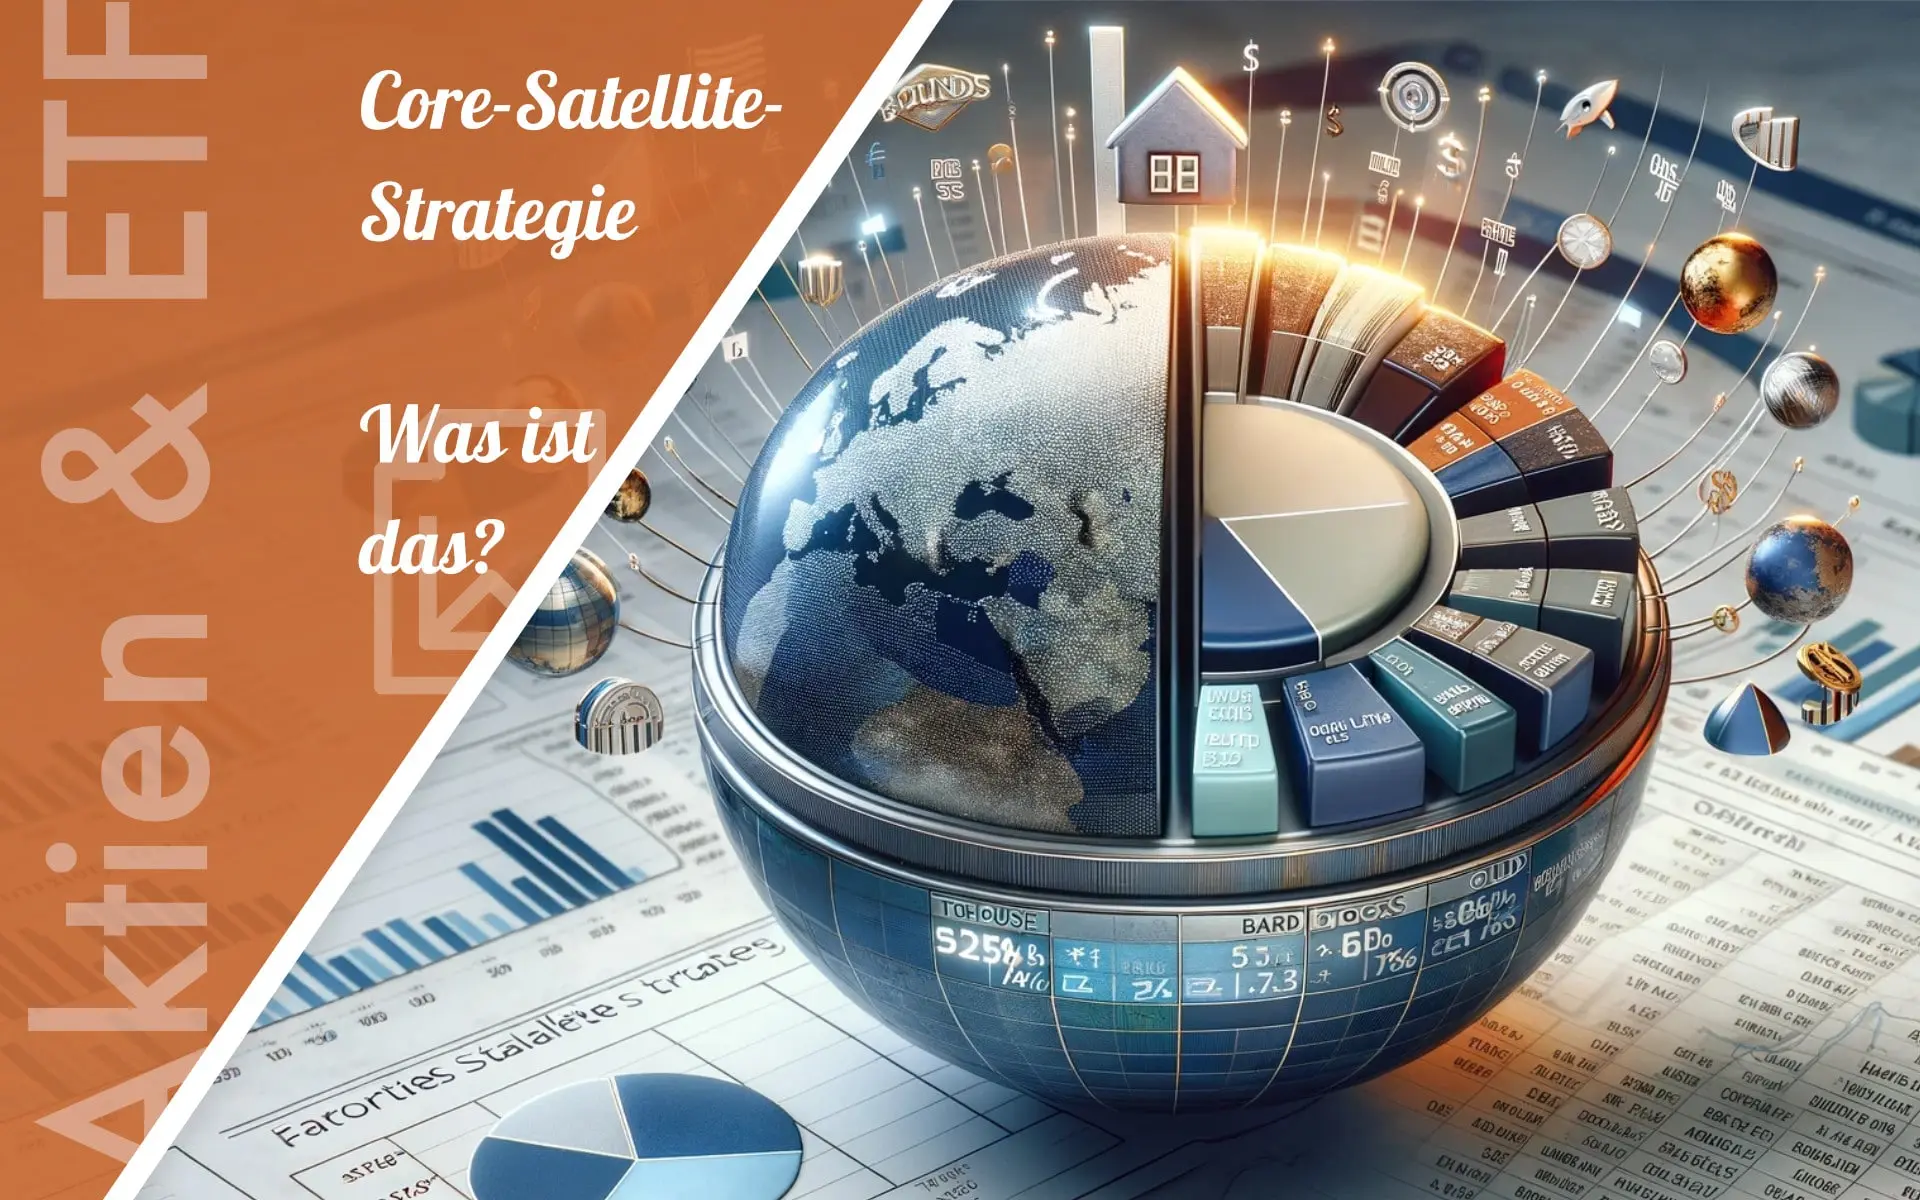 Core Satellite-Strategie sinnvoll? – Definition, Beispiele & Erfahrungen